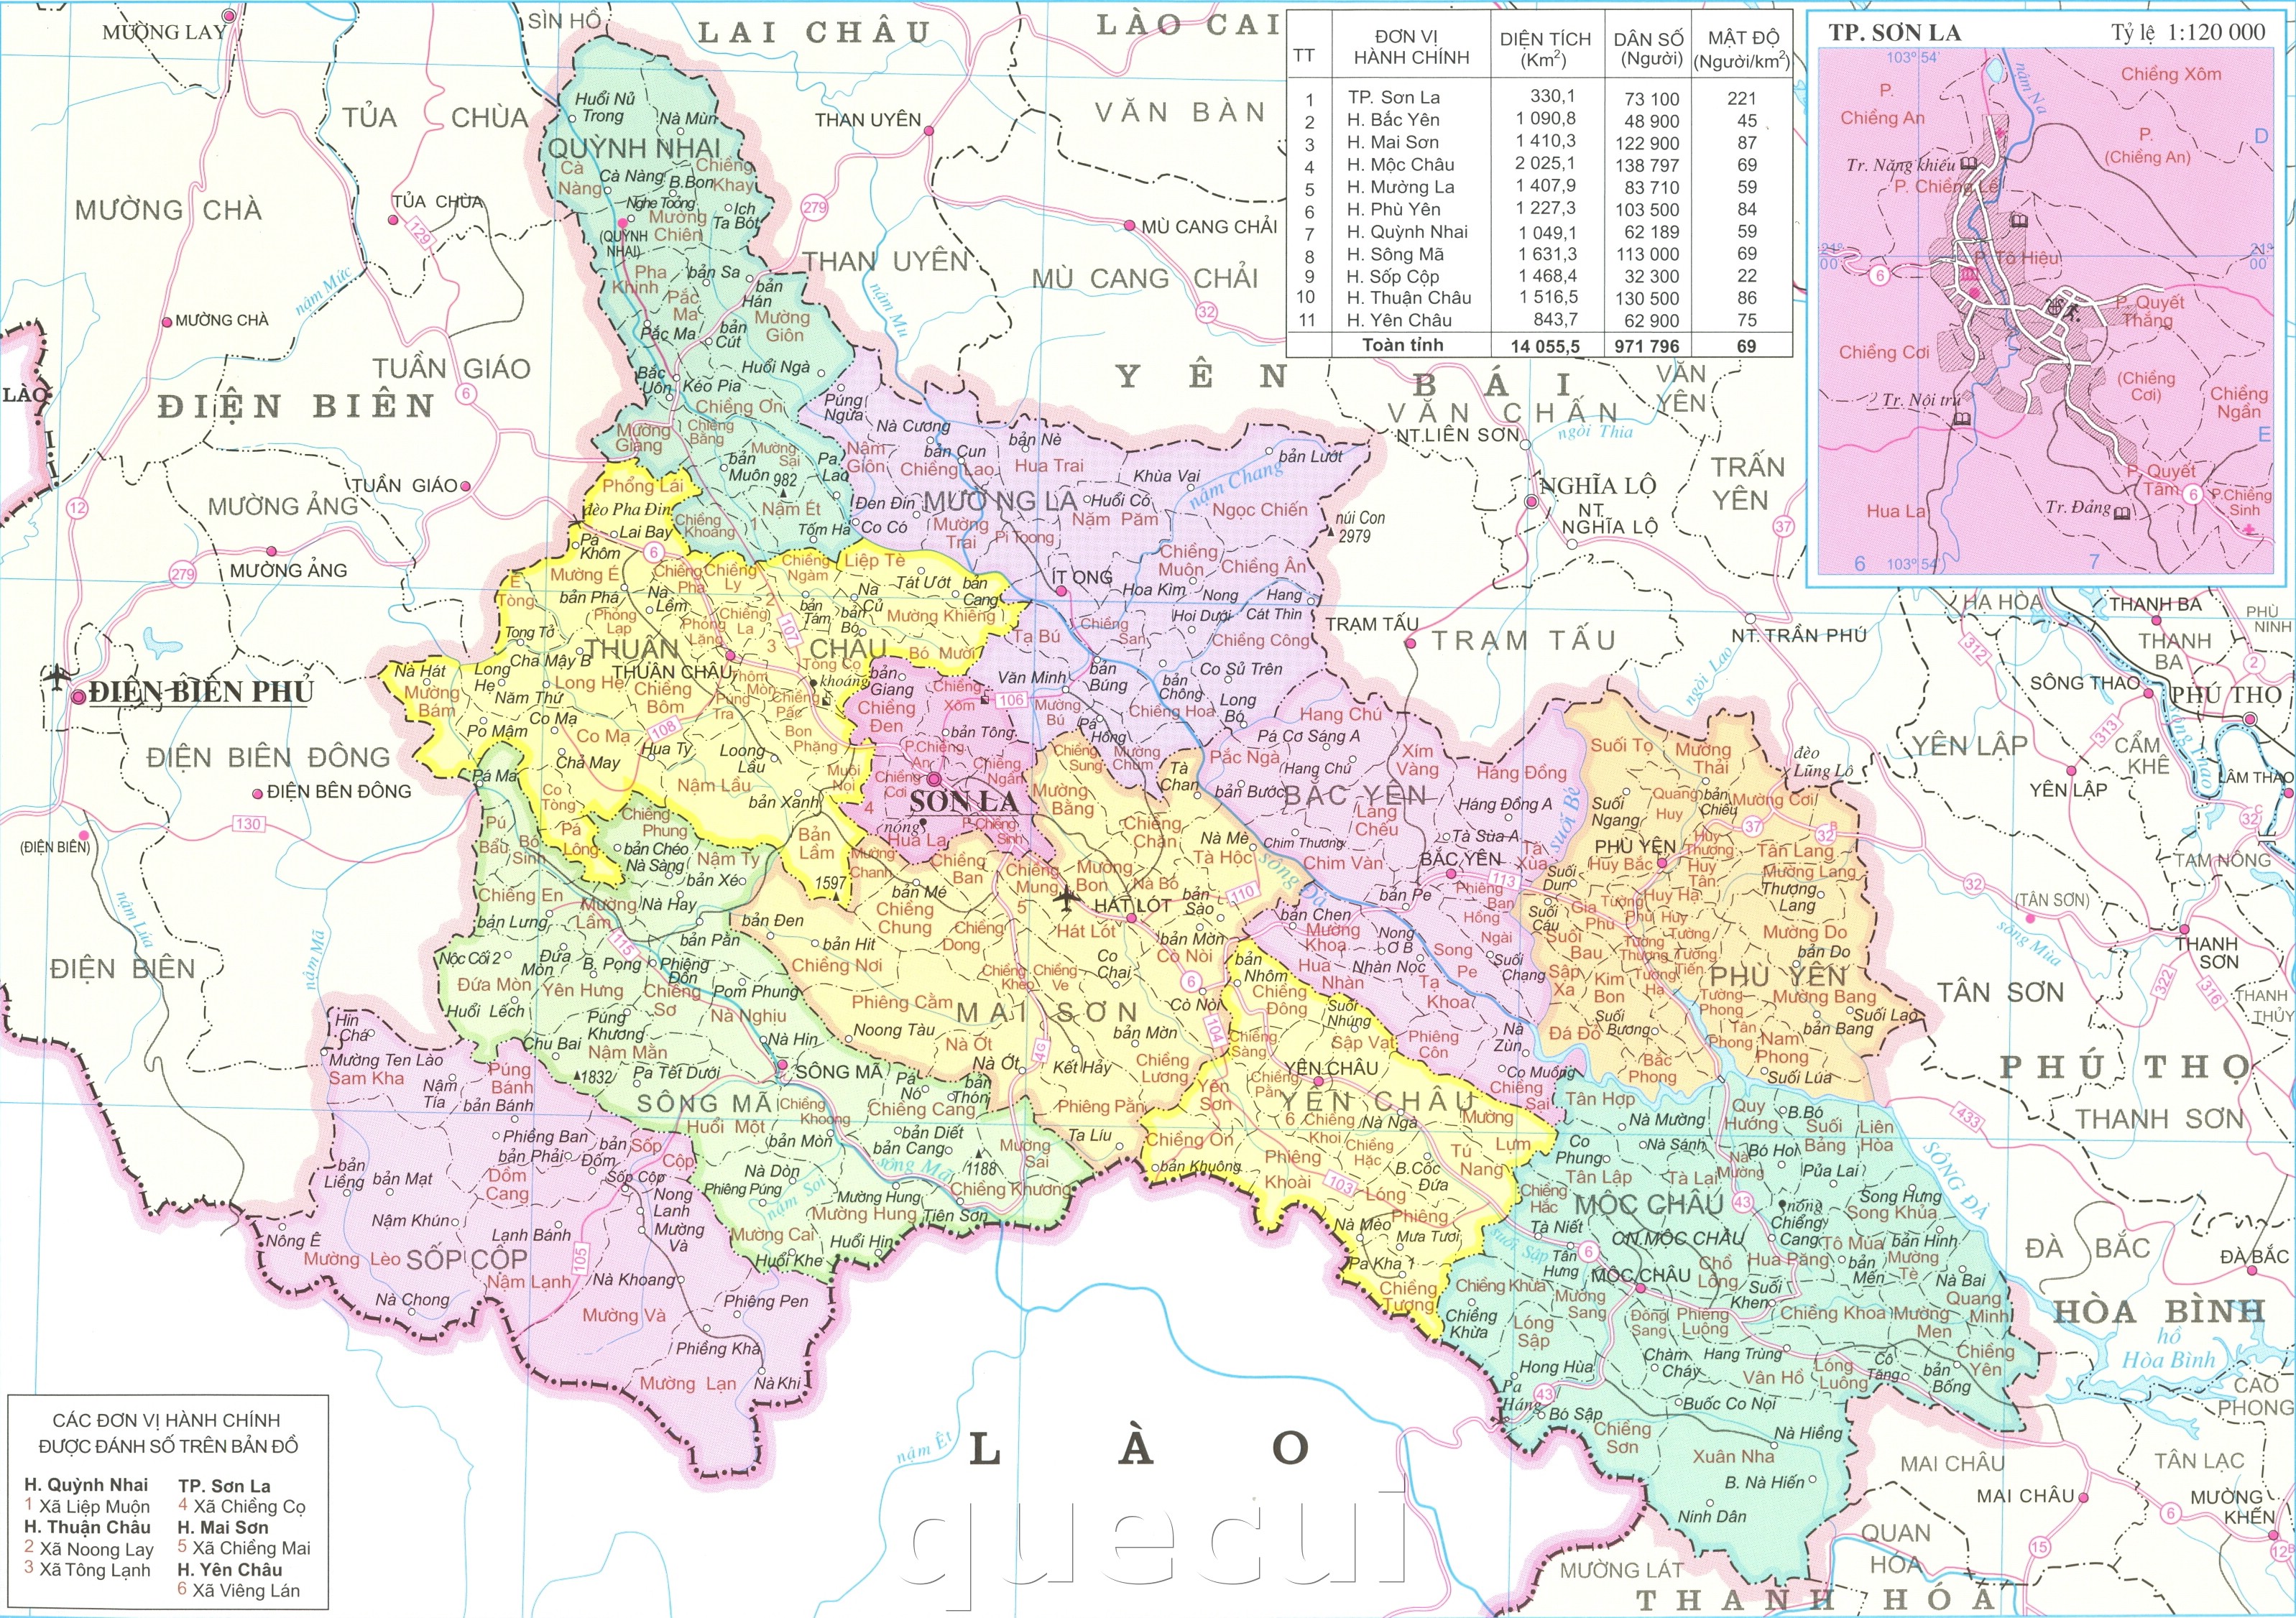 Bộ sưu tập bản đồ địa giới hành chính tỉnh sơn la đầy đủ nhất